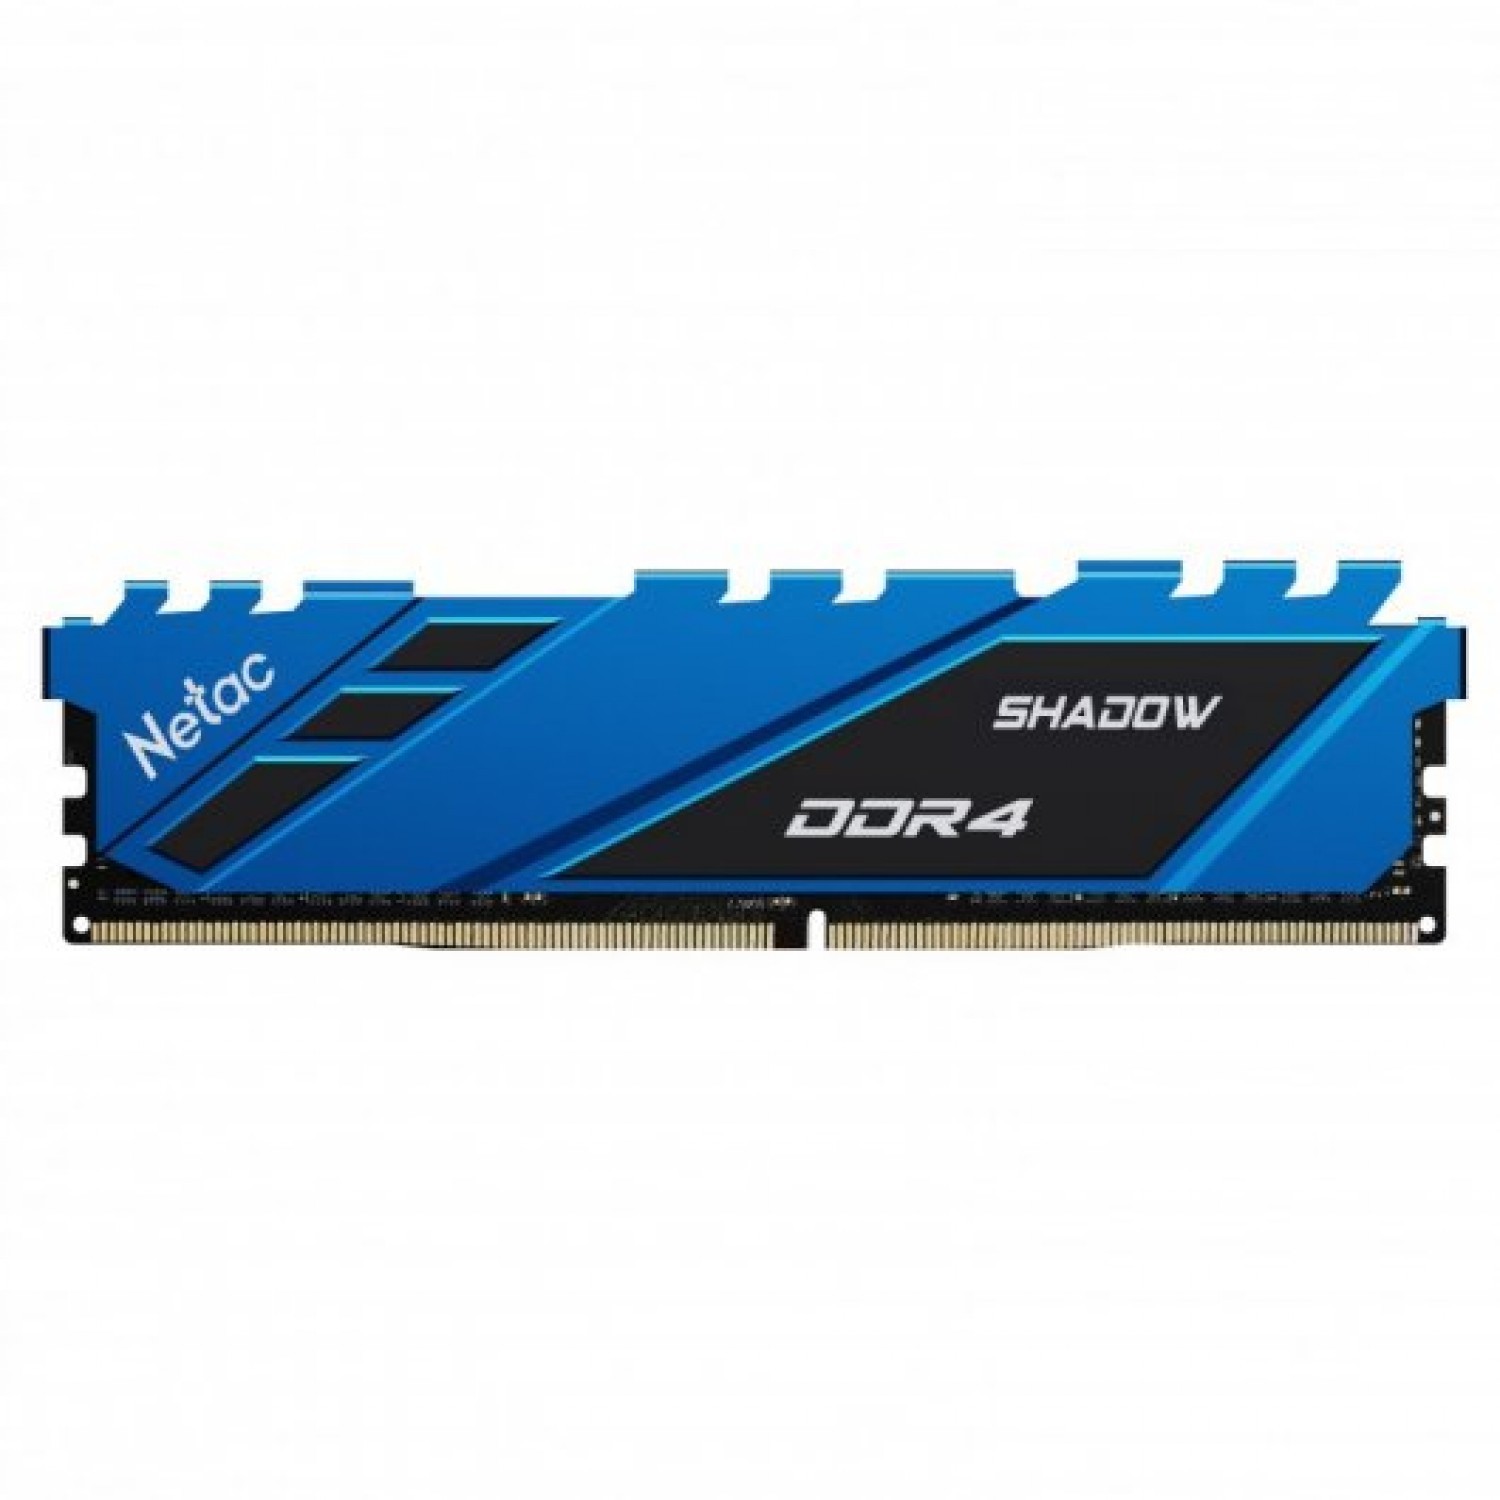 MEMORIA NETAC SHADOW DDR4 3200 8GB C16 BLUE